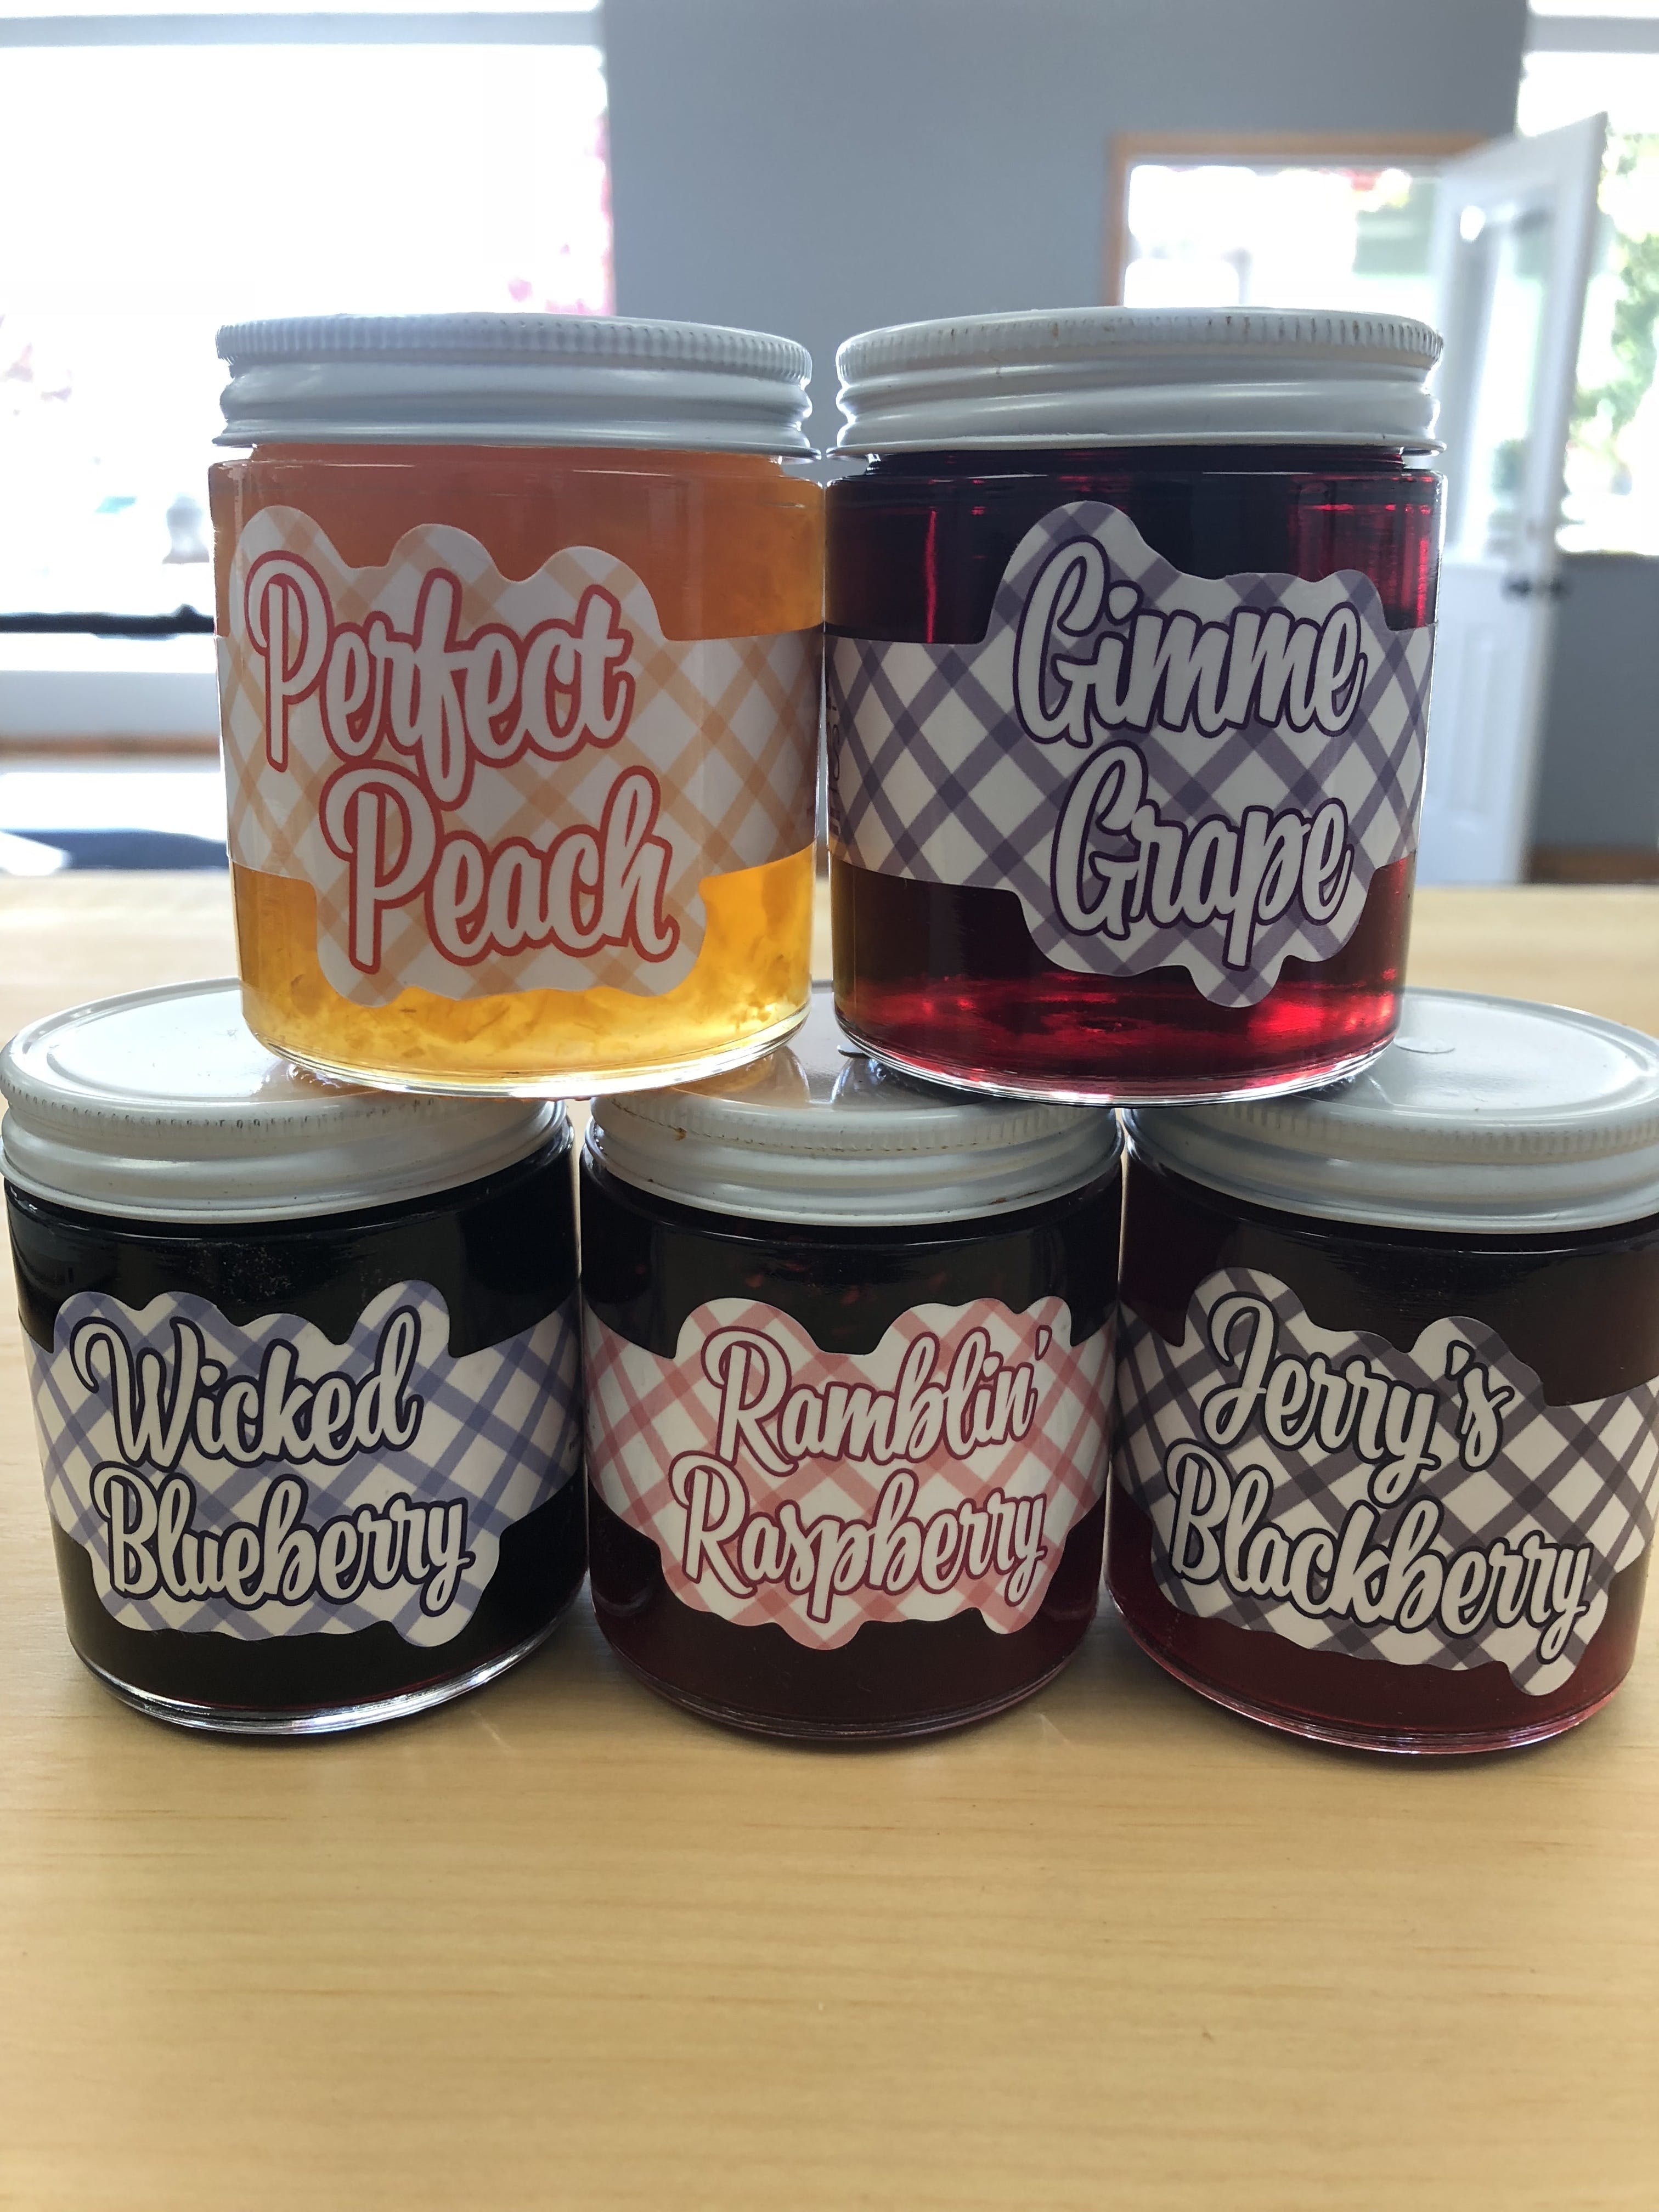 edible-all-kind-jams